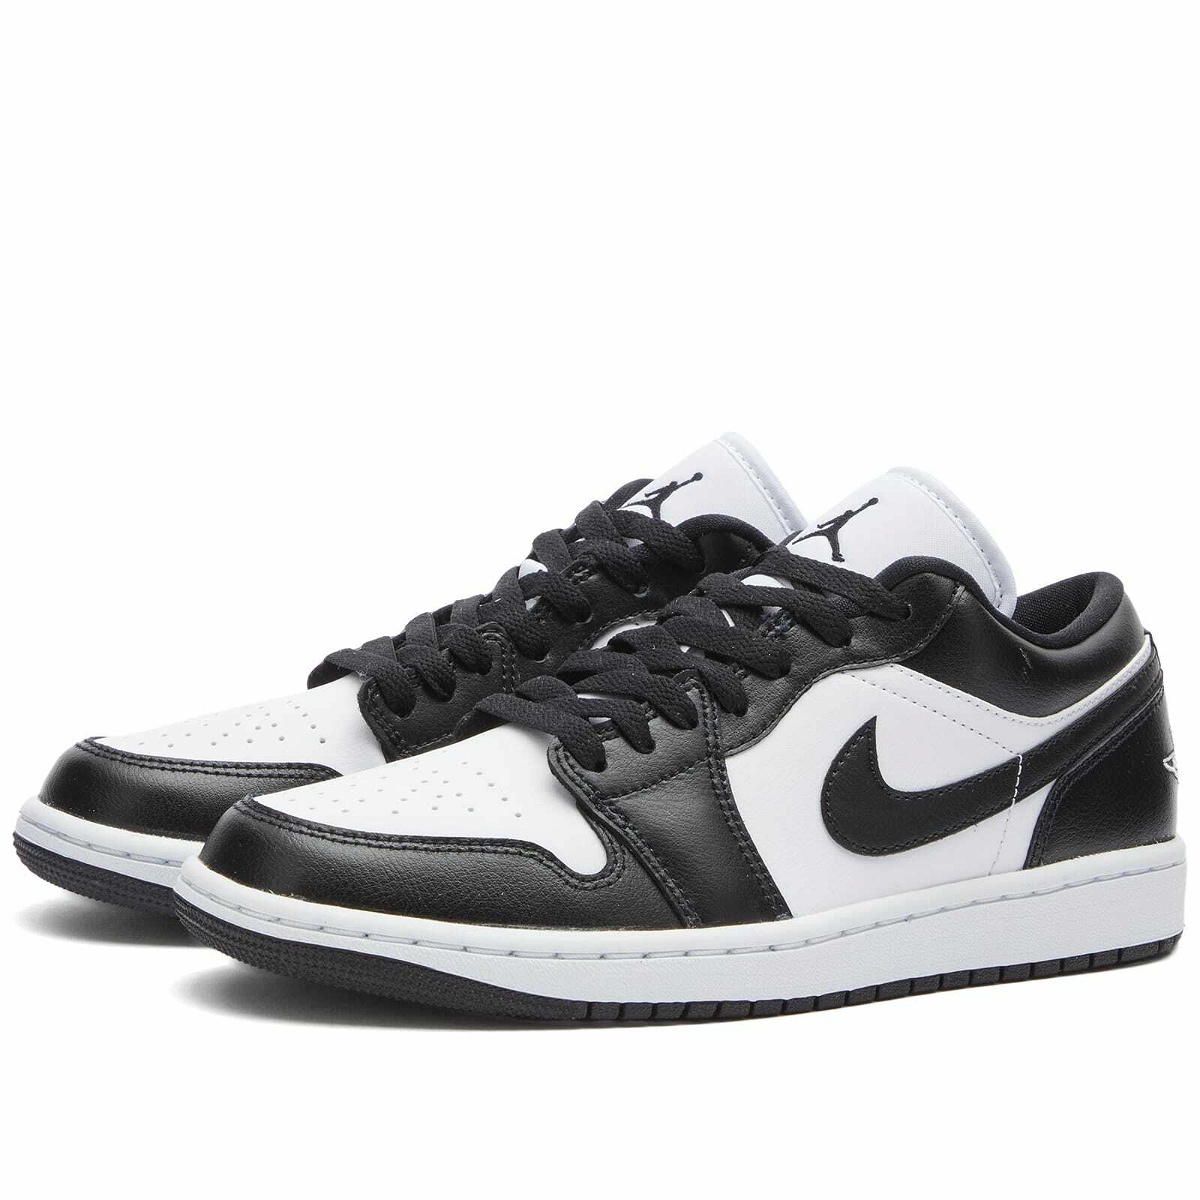 Air Jordan 1 LOW Sneakers in White/Black Nike Jordan Brand